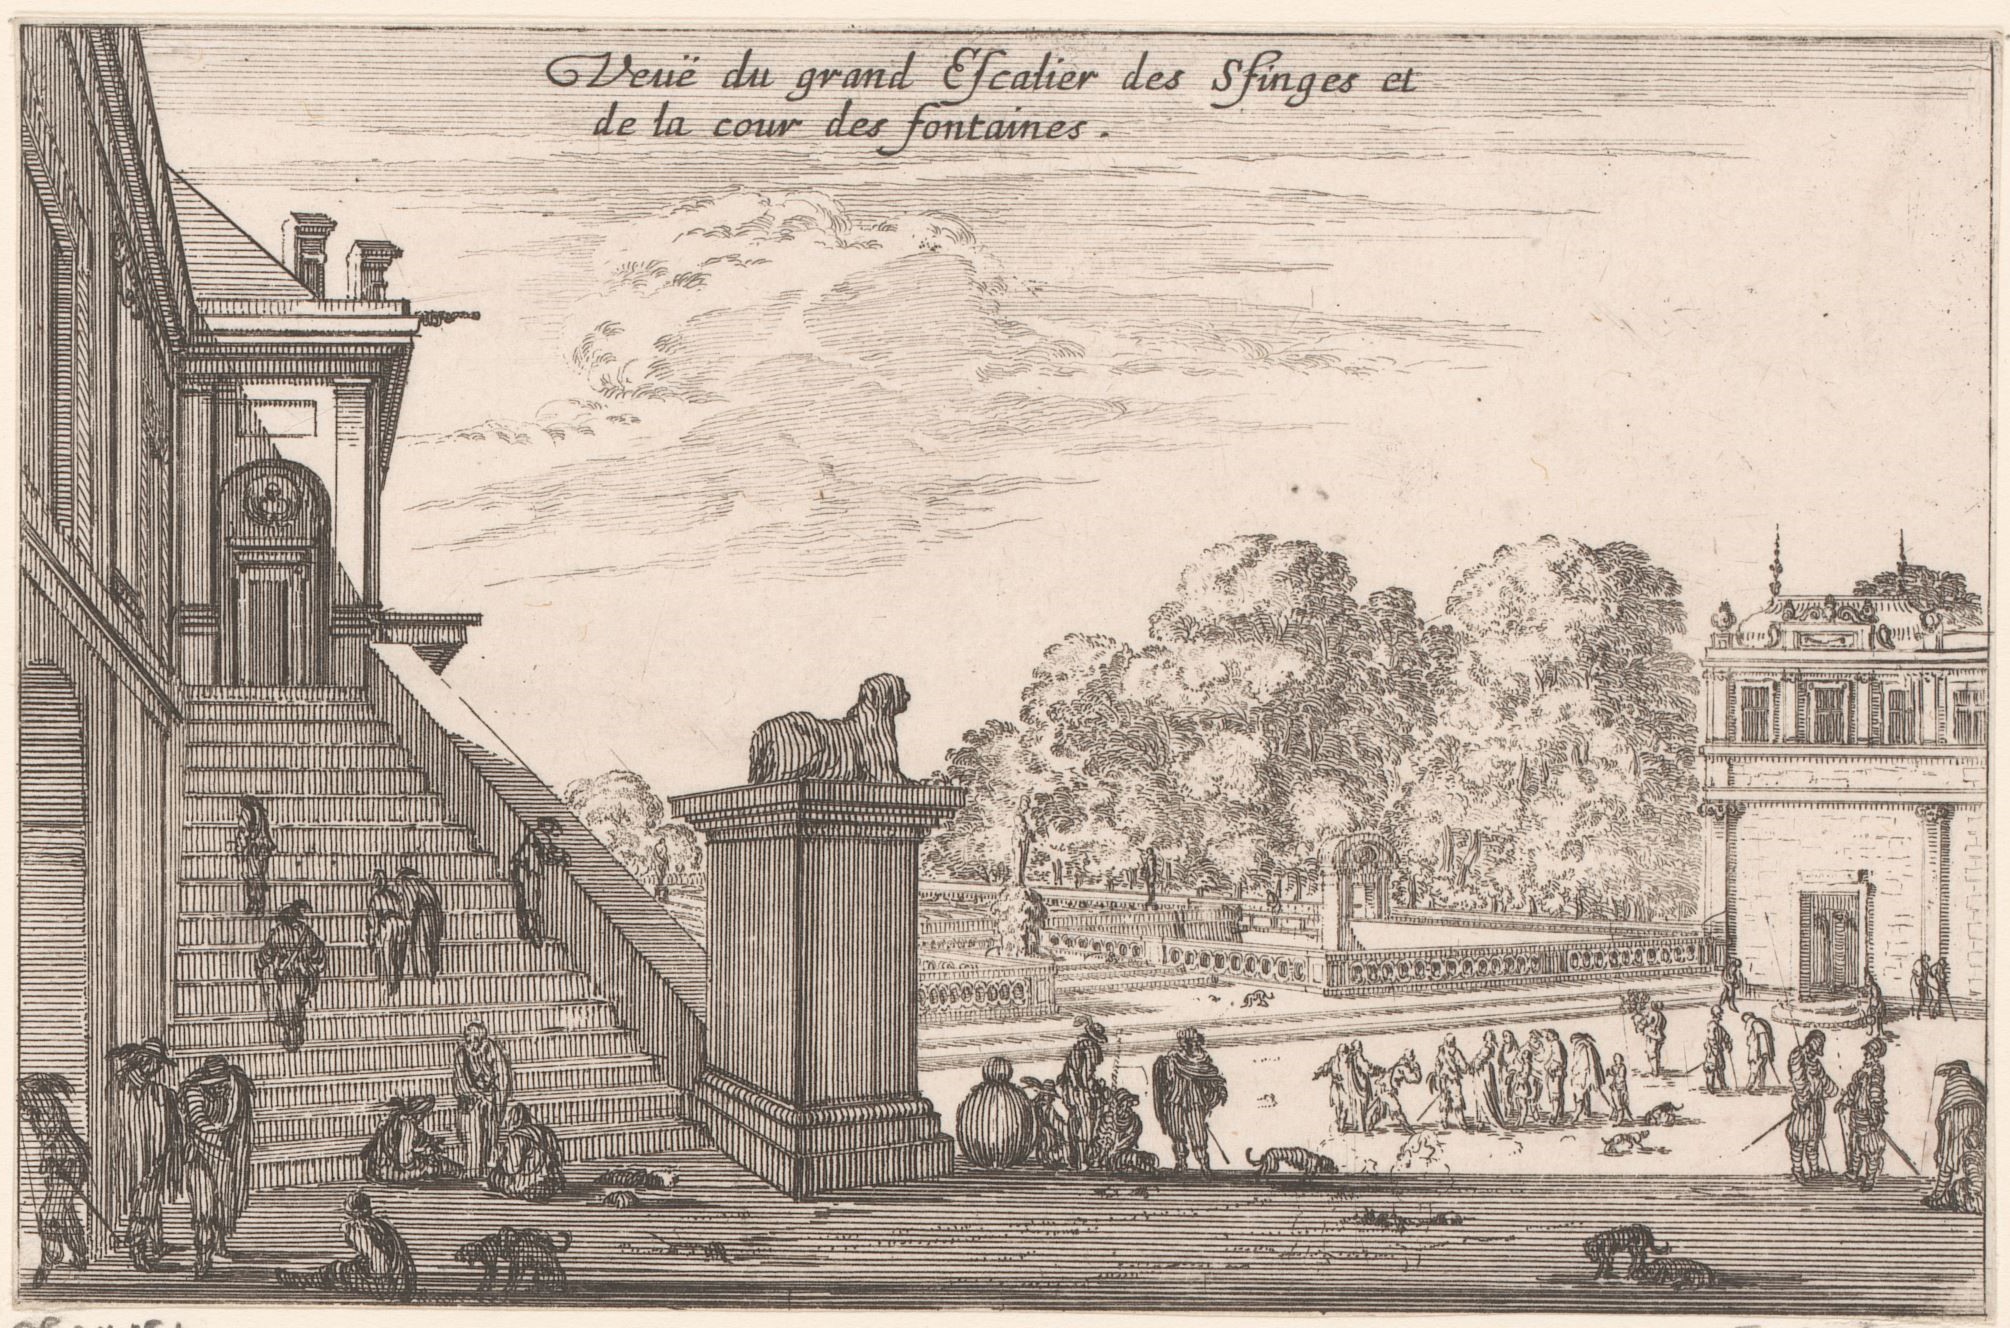 Israël Silvestre : Veuë du grand Escalier des Sfinges (sphinx) et de la cour des fontaines (en haut).